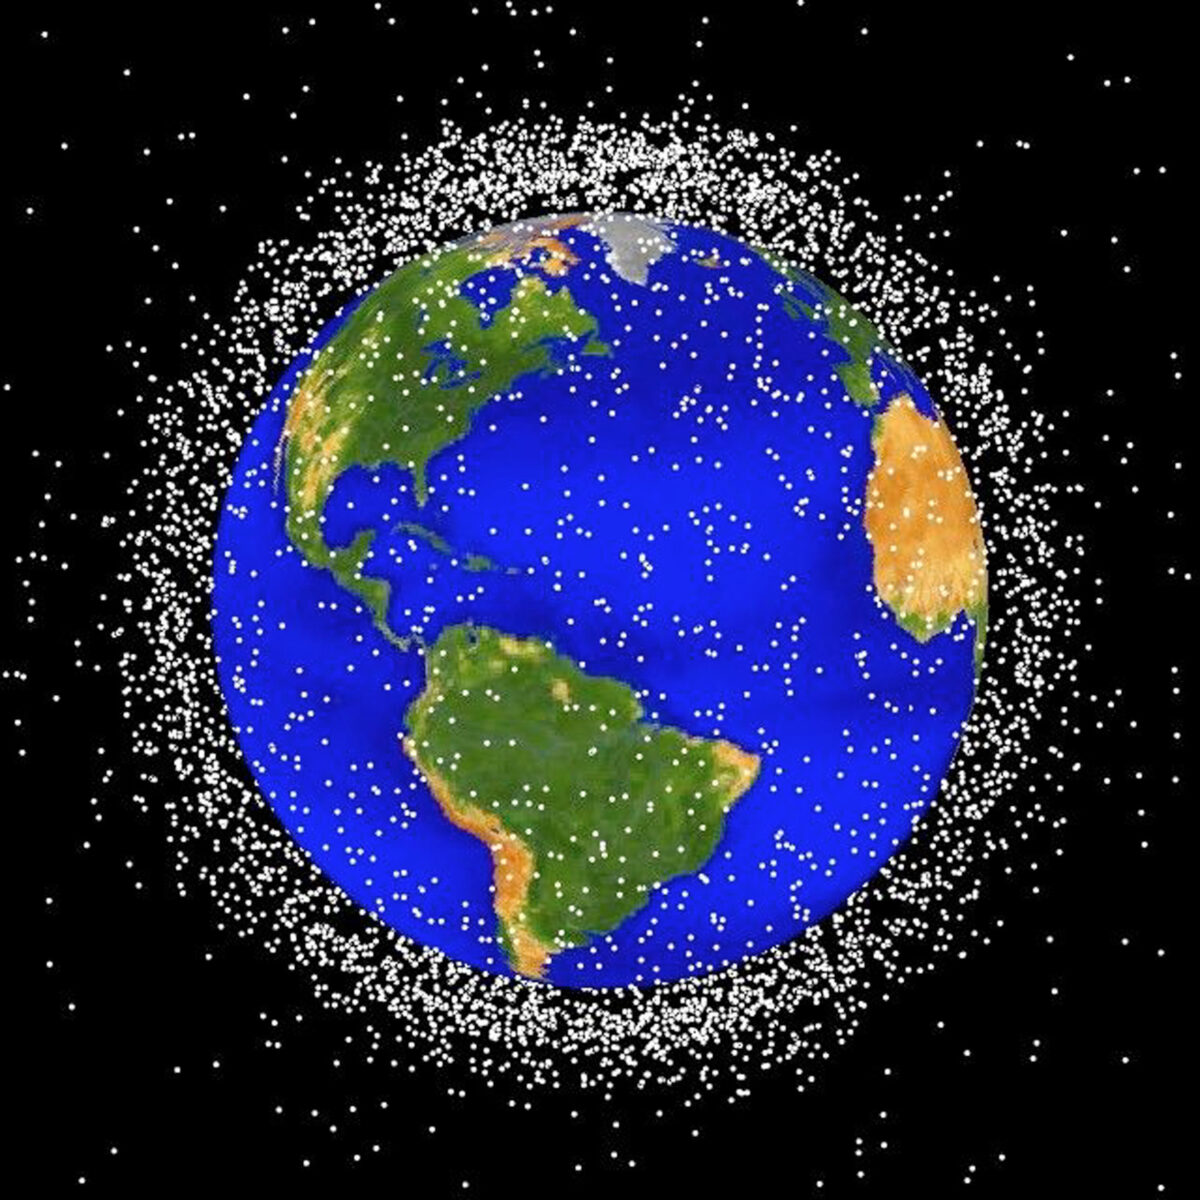 Tập ảnh đồ họa minh họa các mảnh vỡ không gian trong quỹ đạo thấp của Trái Đất. Hiện có khoảng 900,000 mảnh vụn vũ trụ lớn hơn 1cm quay quanh Trái Đất, theo Cơ quan Vũ trụ Anh. (Ảnh NASA / Getty Images)